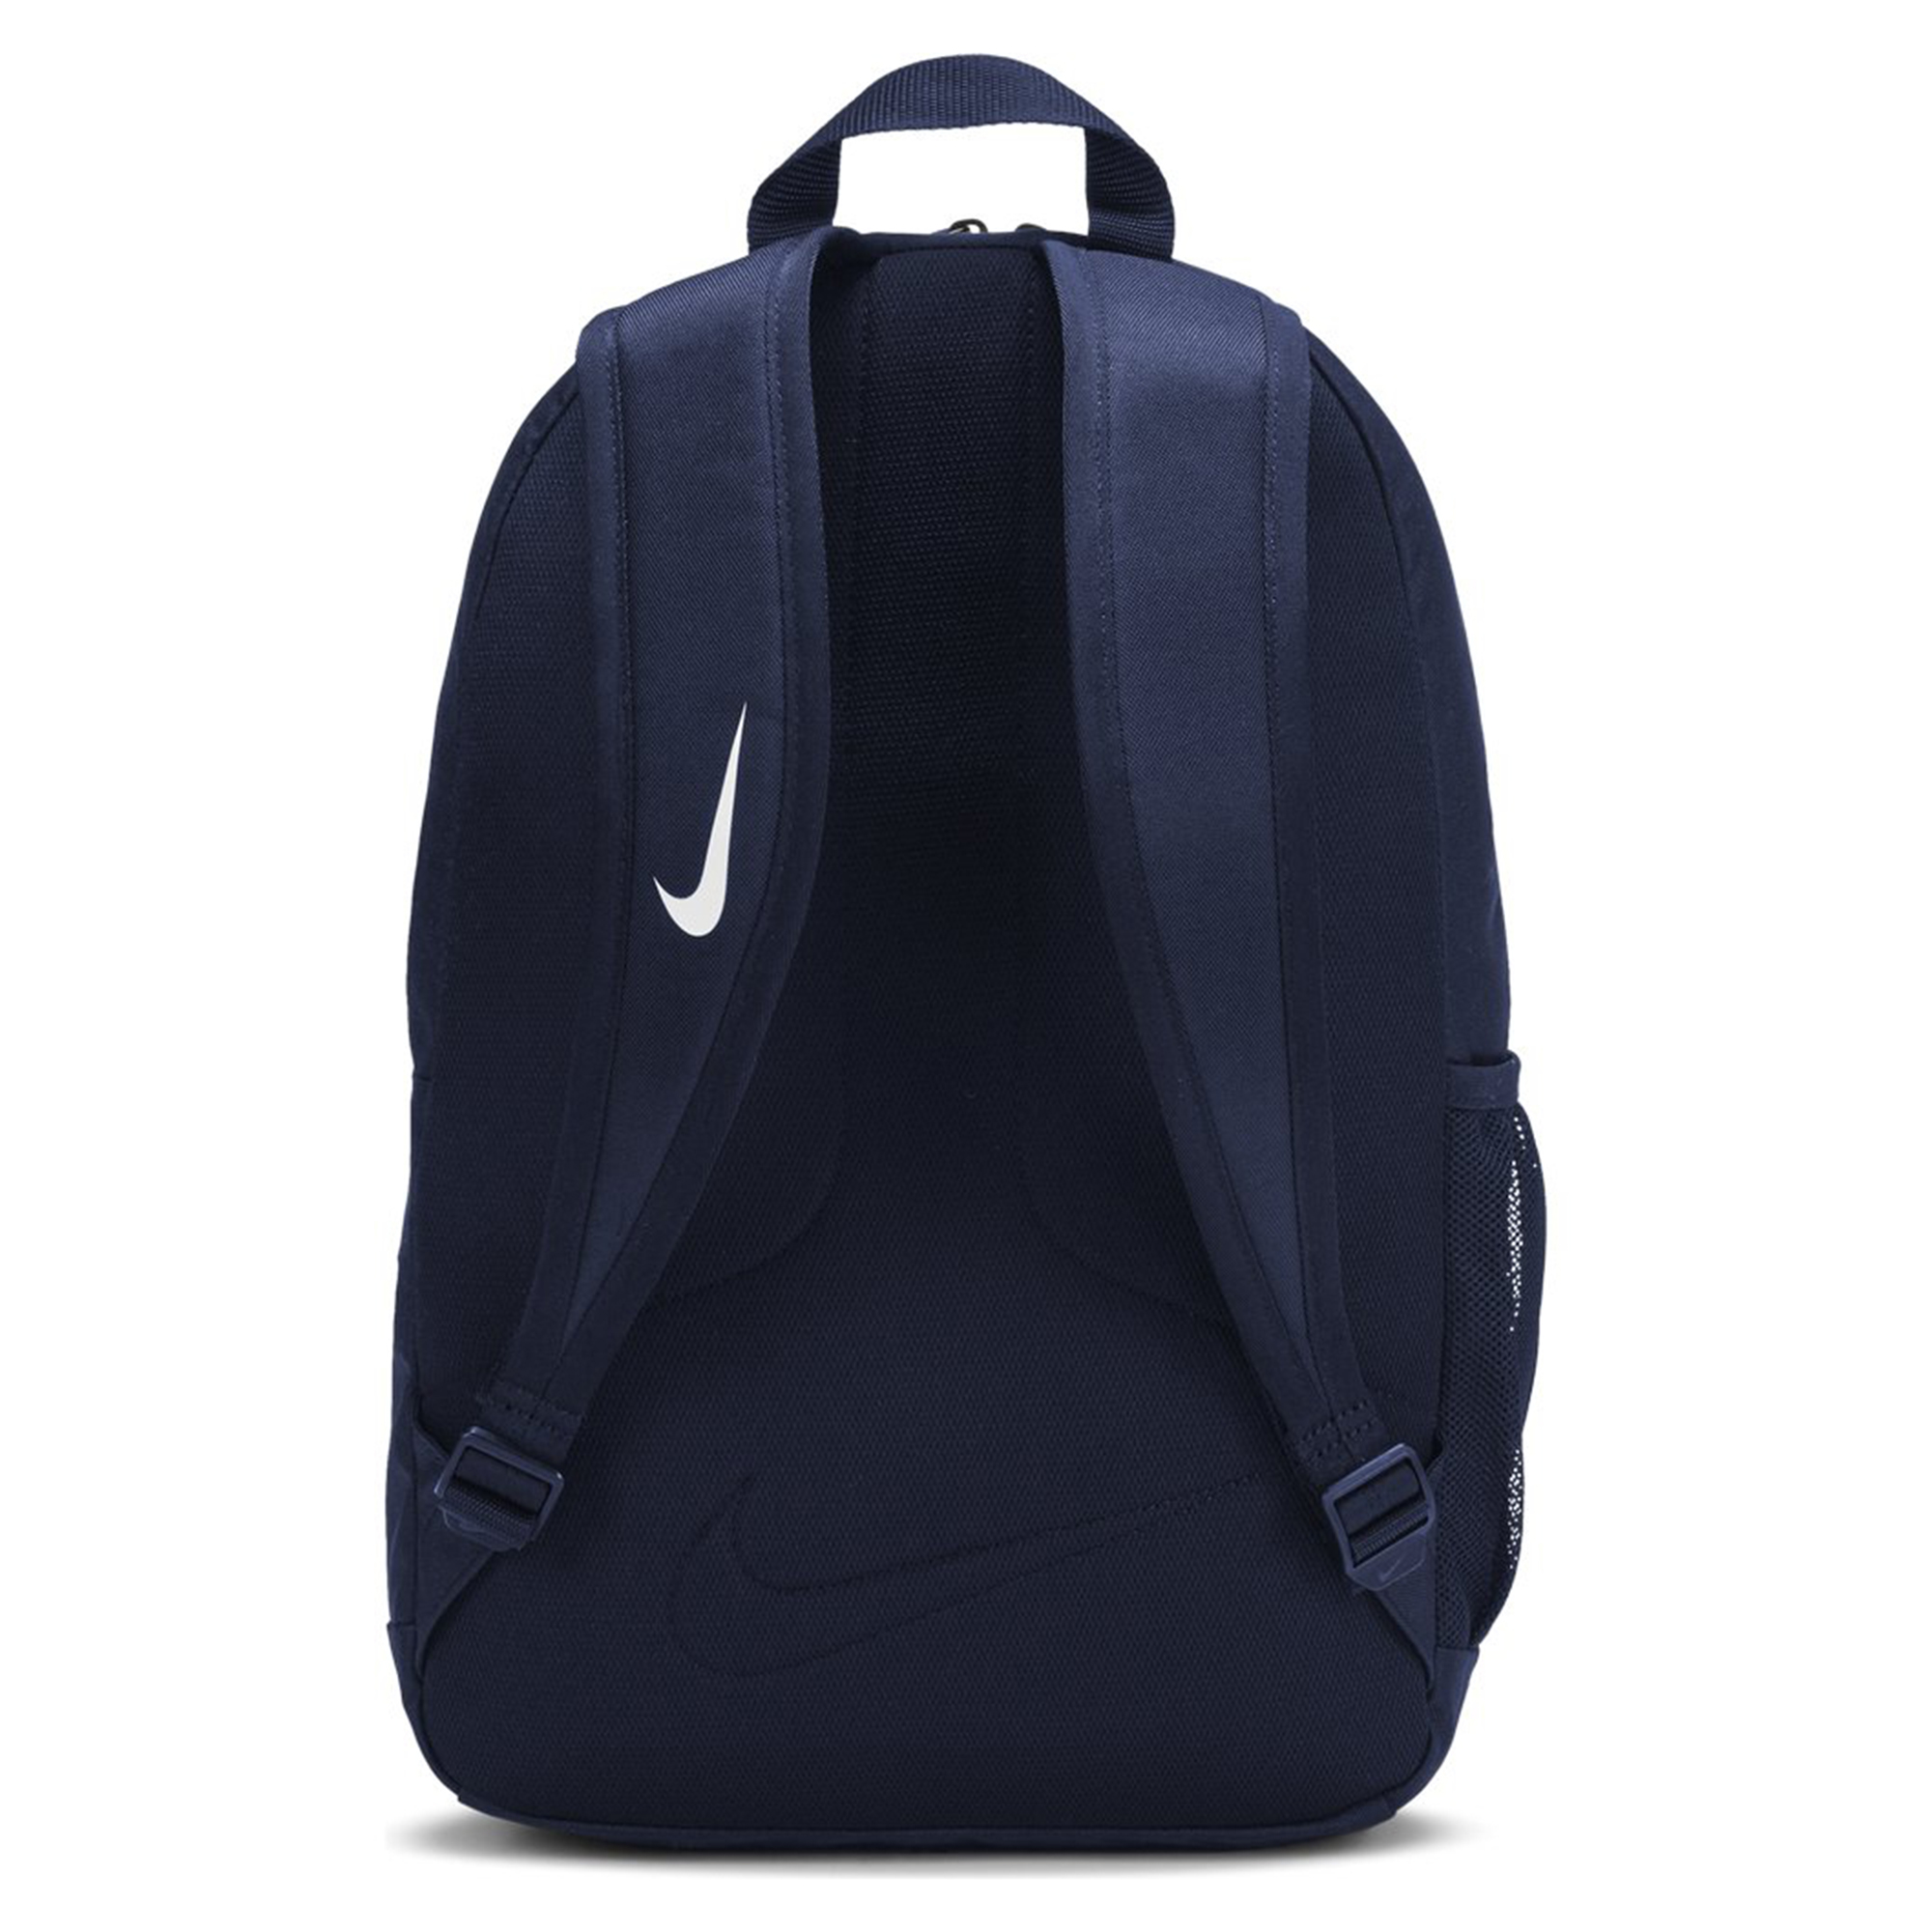 NIKE Academy Team Kinder Rucksack Backpack 45x30x12 cm blau ca.22L